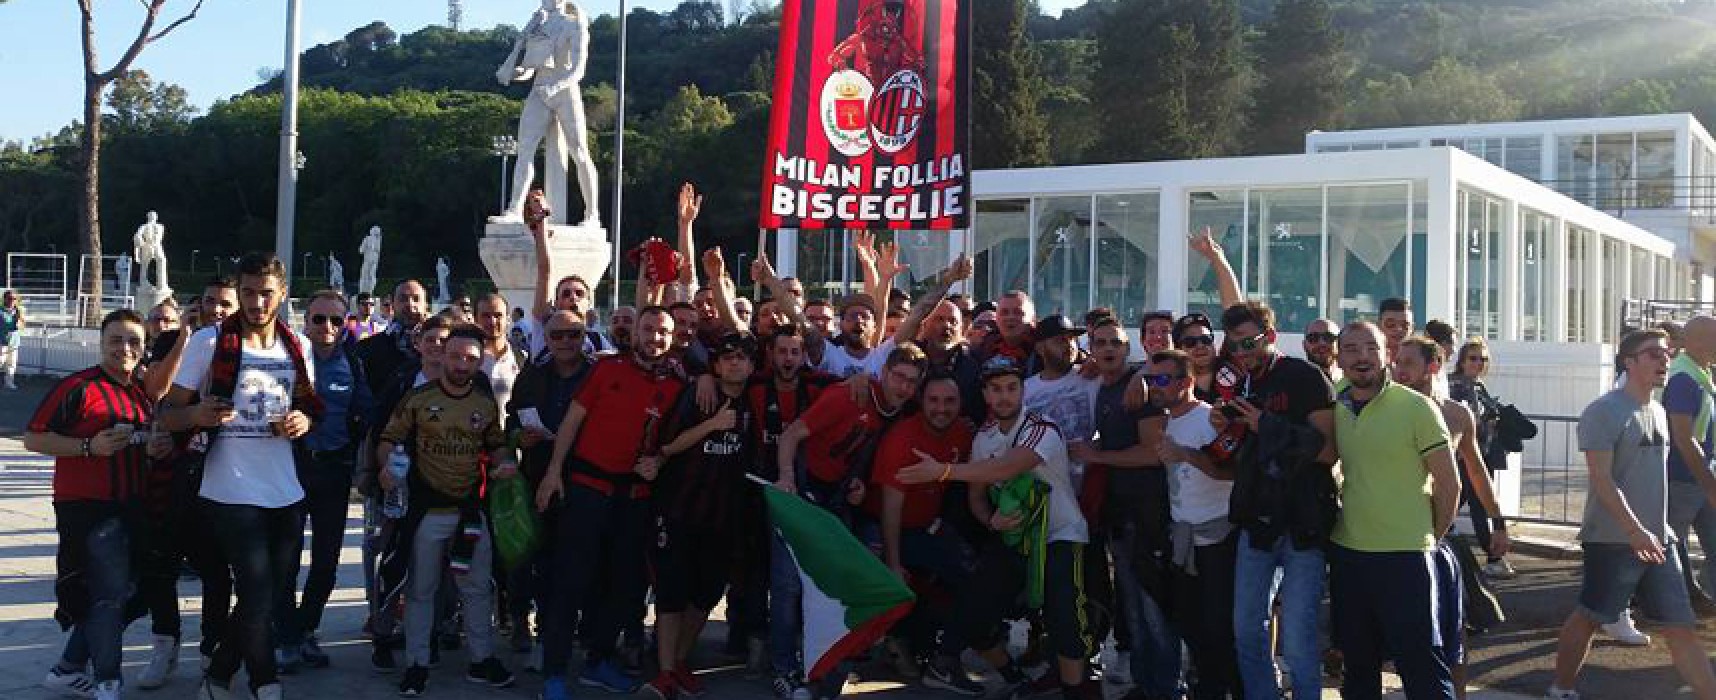 Bisceglie conquista il “San Siro”, club Milan Follia sul periodico rossonero in occasione del derby